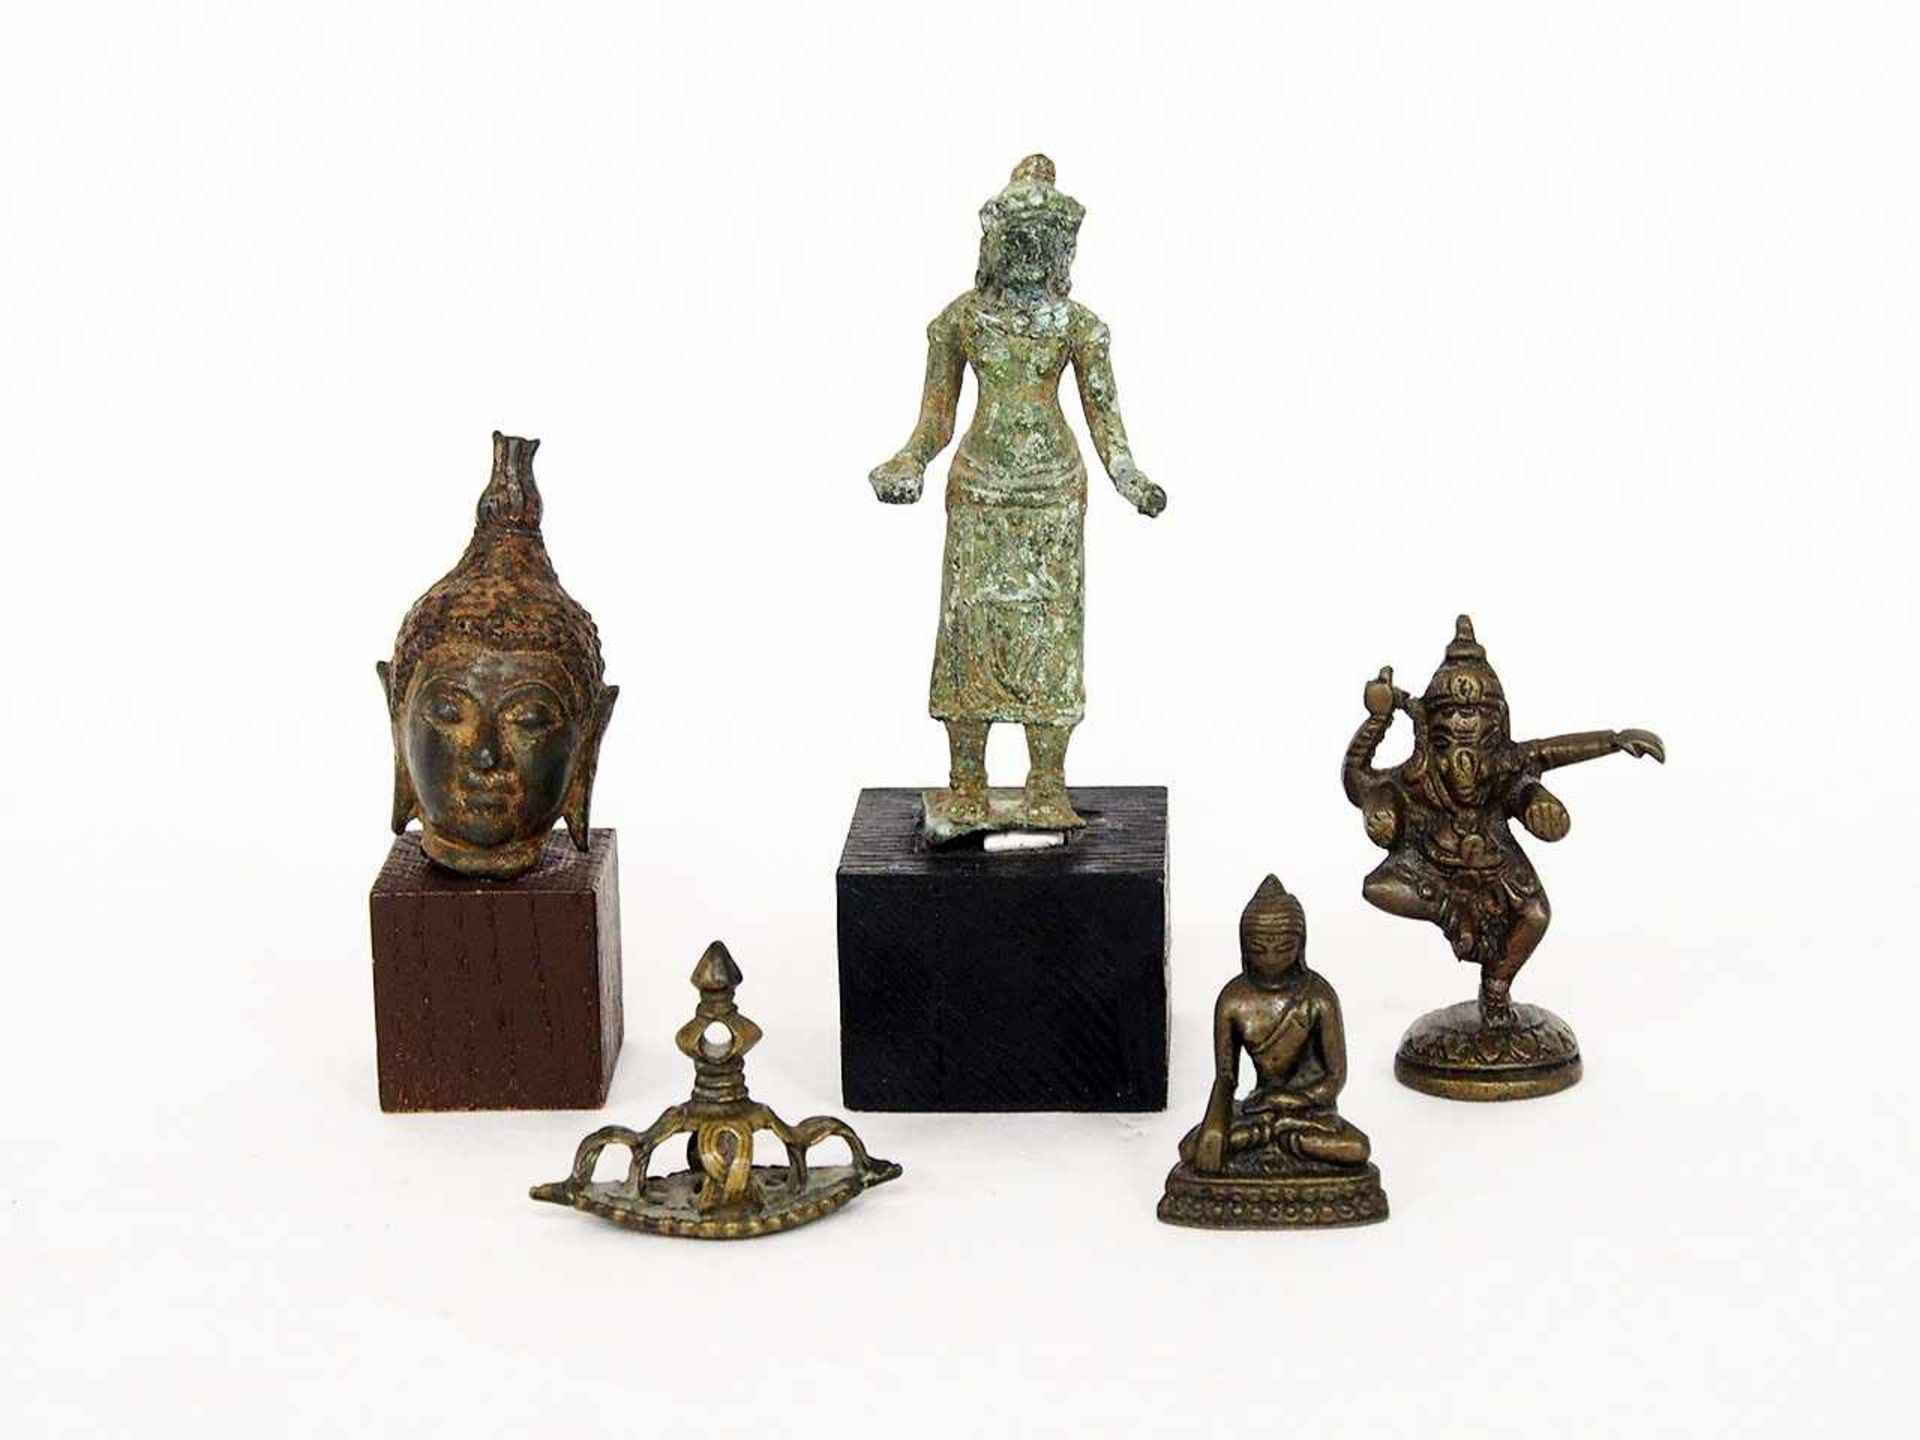 Konvolut BronzeobjekteThailand 17.-19. Jh., Ganesha, Buddha-Kopf, thronender Buddha, stehender